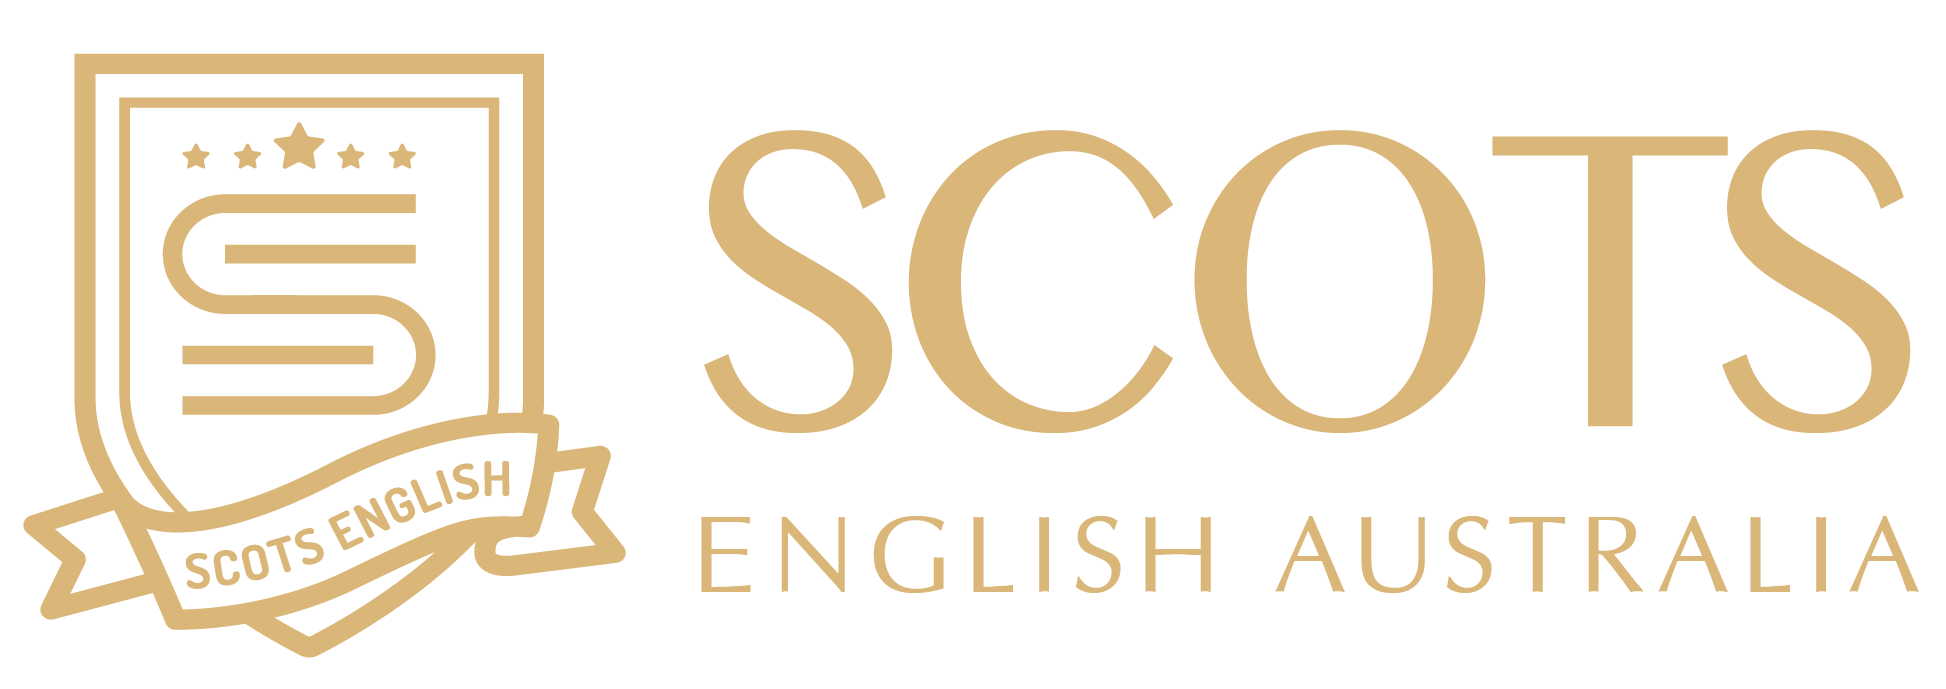 Logo Công ty Cổ phần Scots English Australia